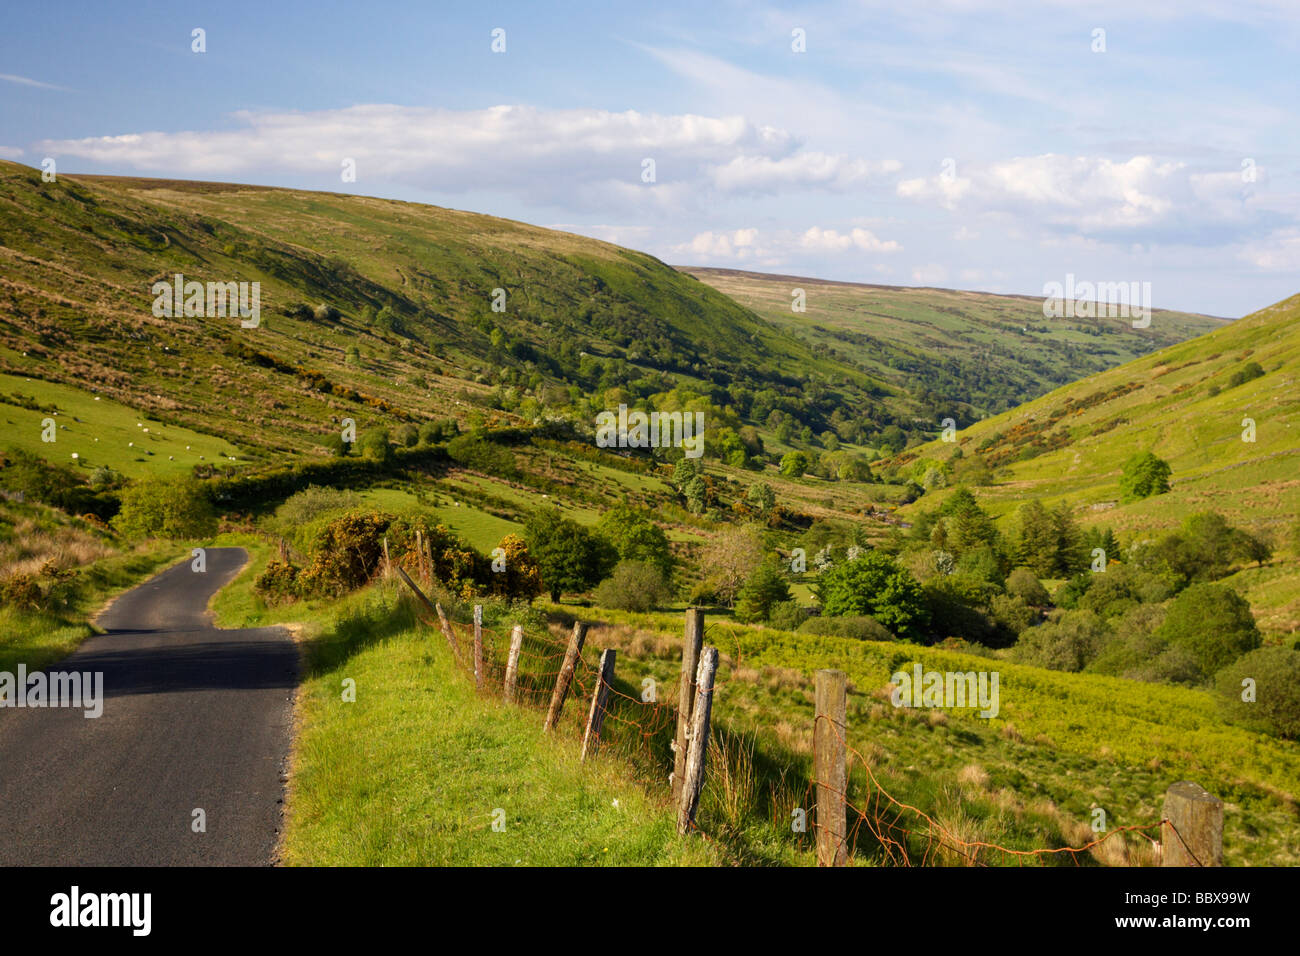 Petit pays étroit sinueuse route de montagne à travers la route panoramique glendun glendun le comté d'Antrim en Irlande du Nord uk Banque D'Images